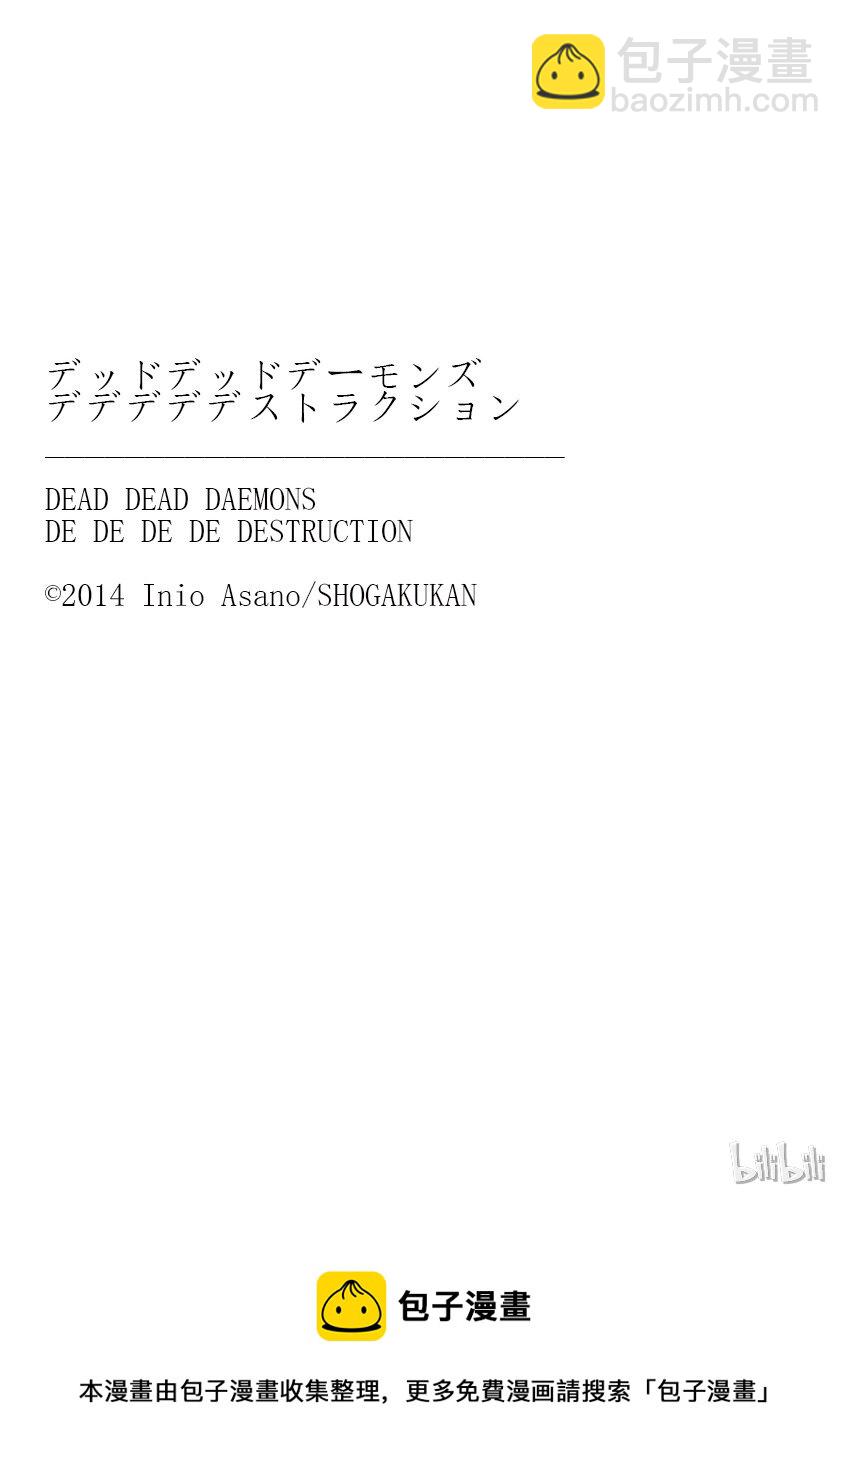 惡魔的破壞 DEAD DEAD DEMON'S DEDEDEDE DESTRUCTION - 003 - 1